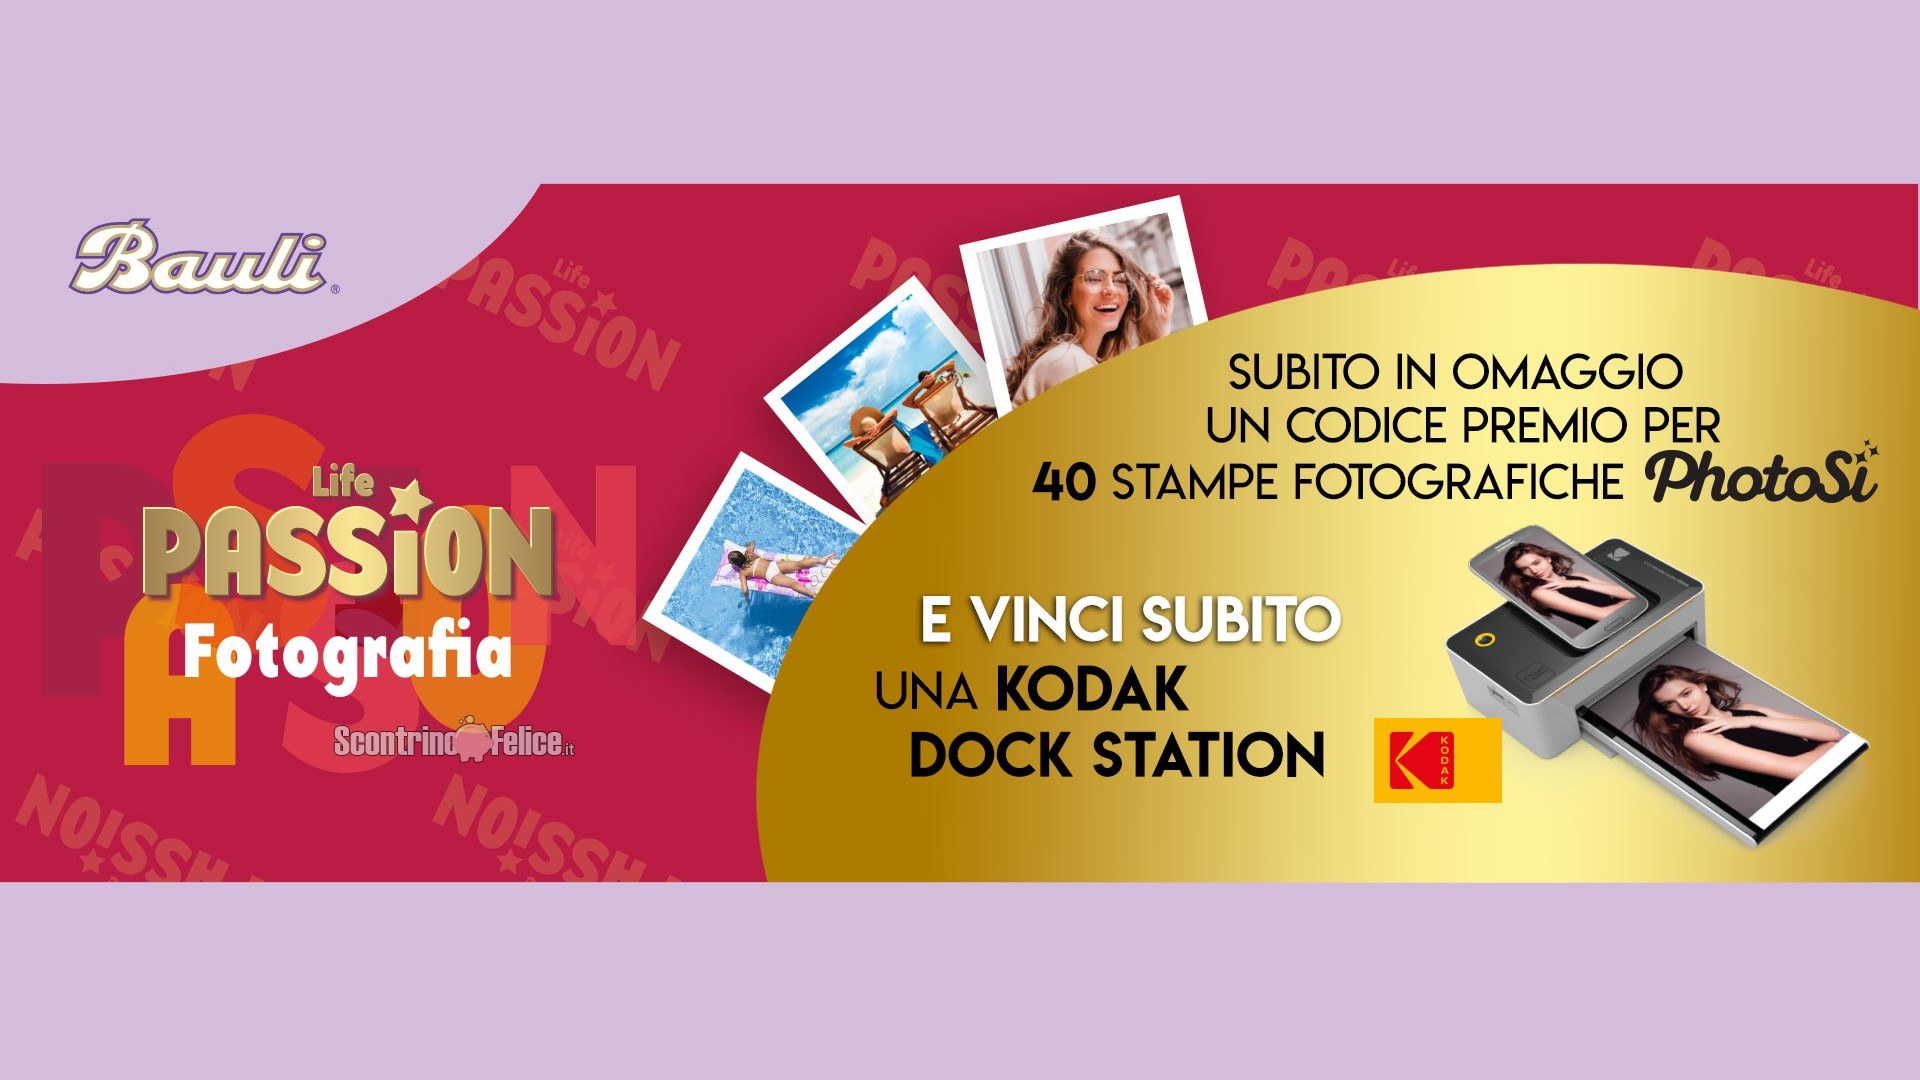 Concorso Uova di Pasqua Bauli Life Passion vinci 100 Kodak Dock Station e stampe PhotoSì come premio certo